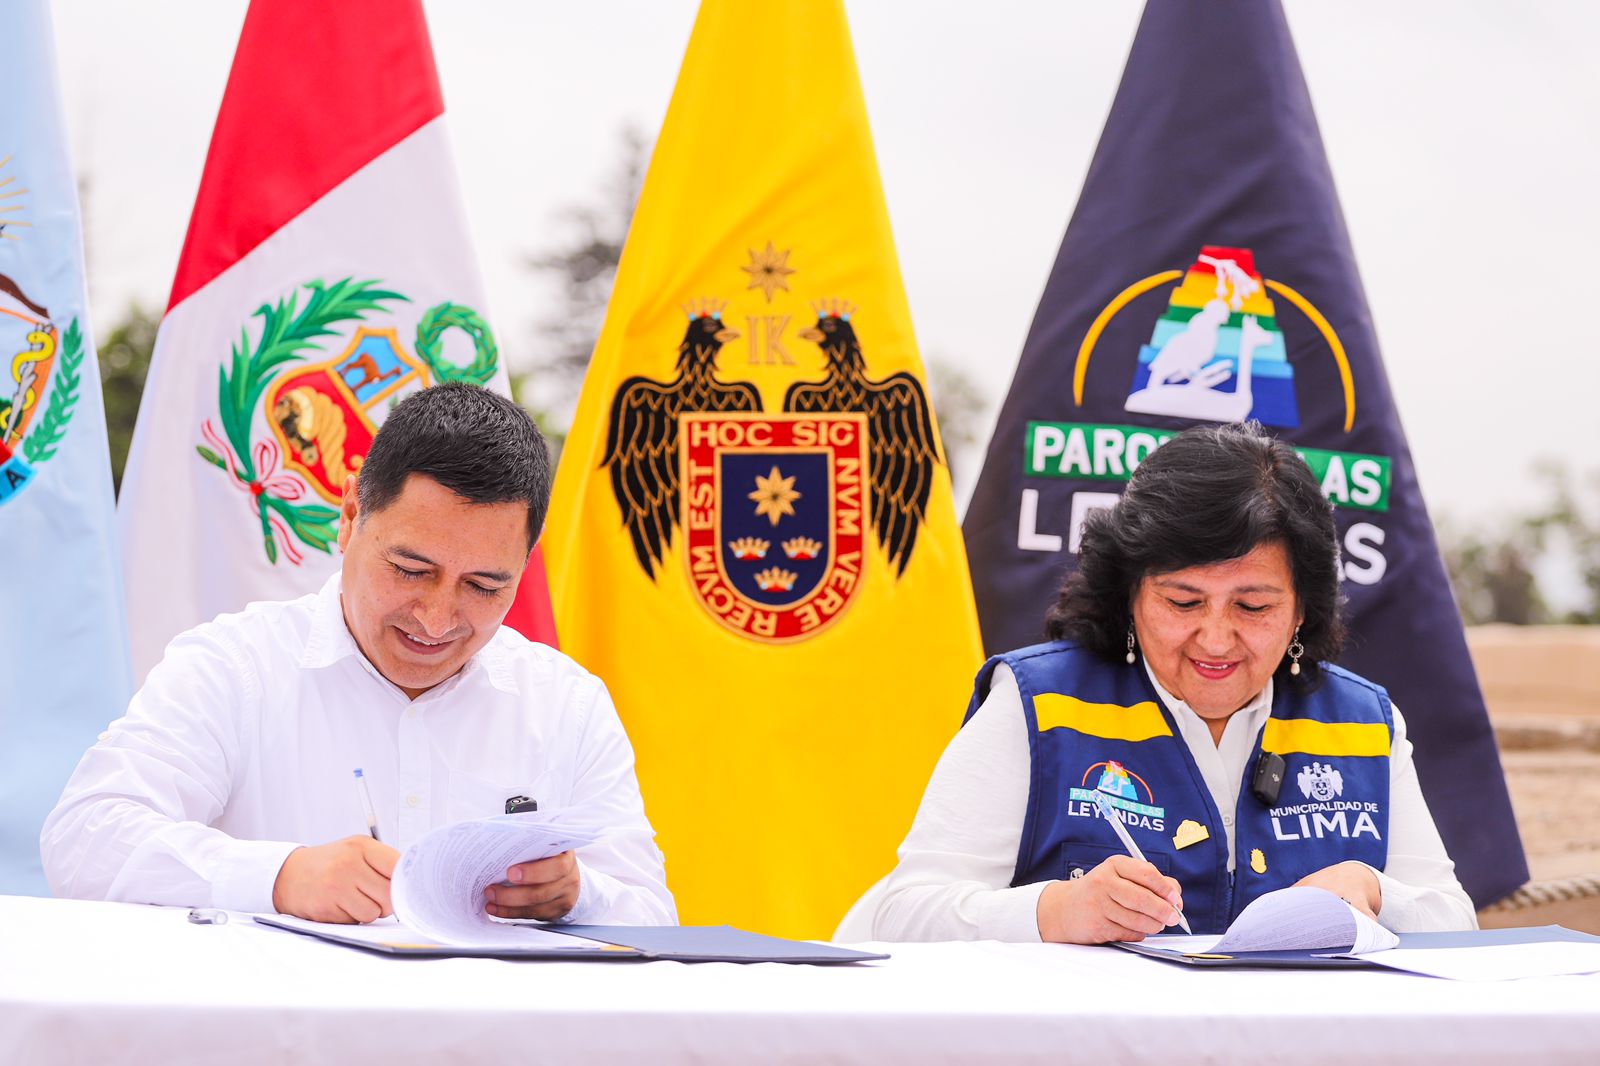 Municipalidad de Bellavista firmó convenio con Parque de las Leyendas